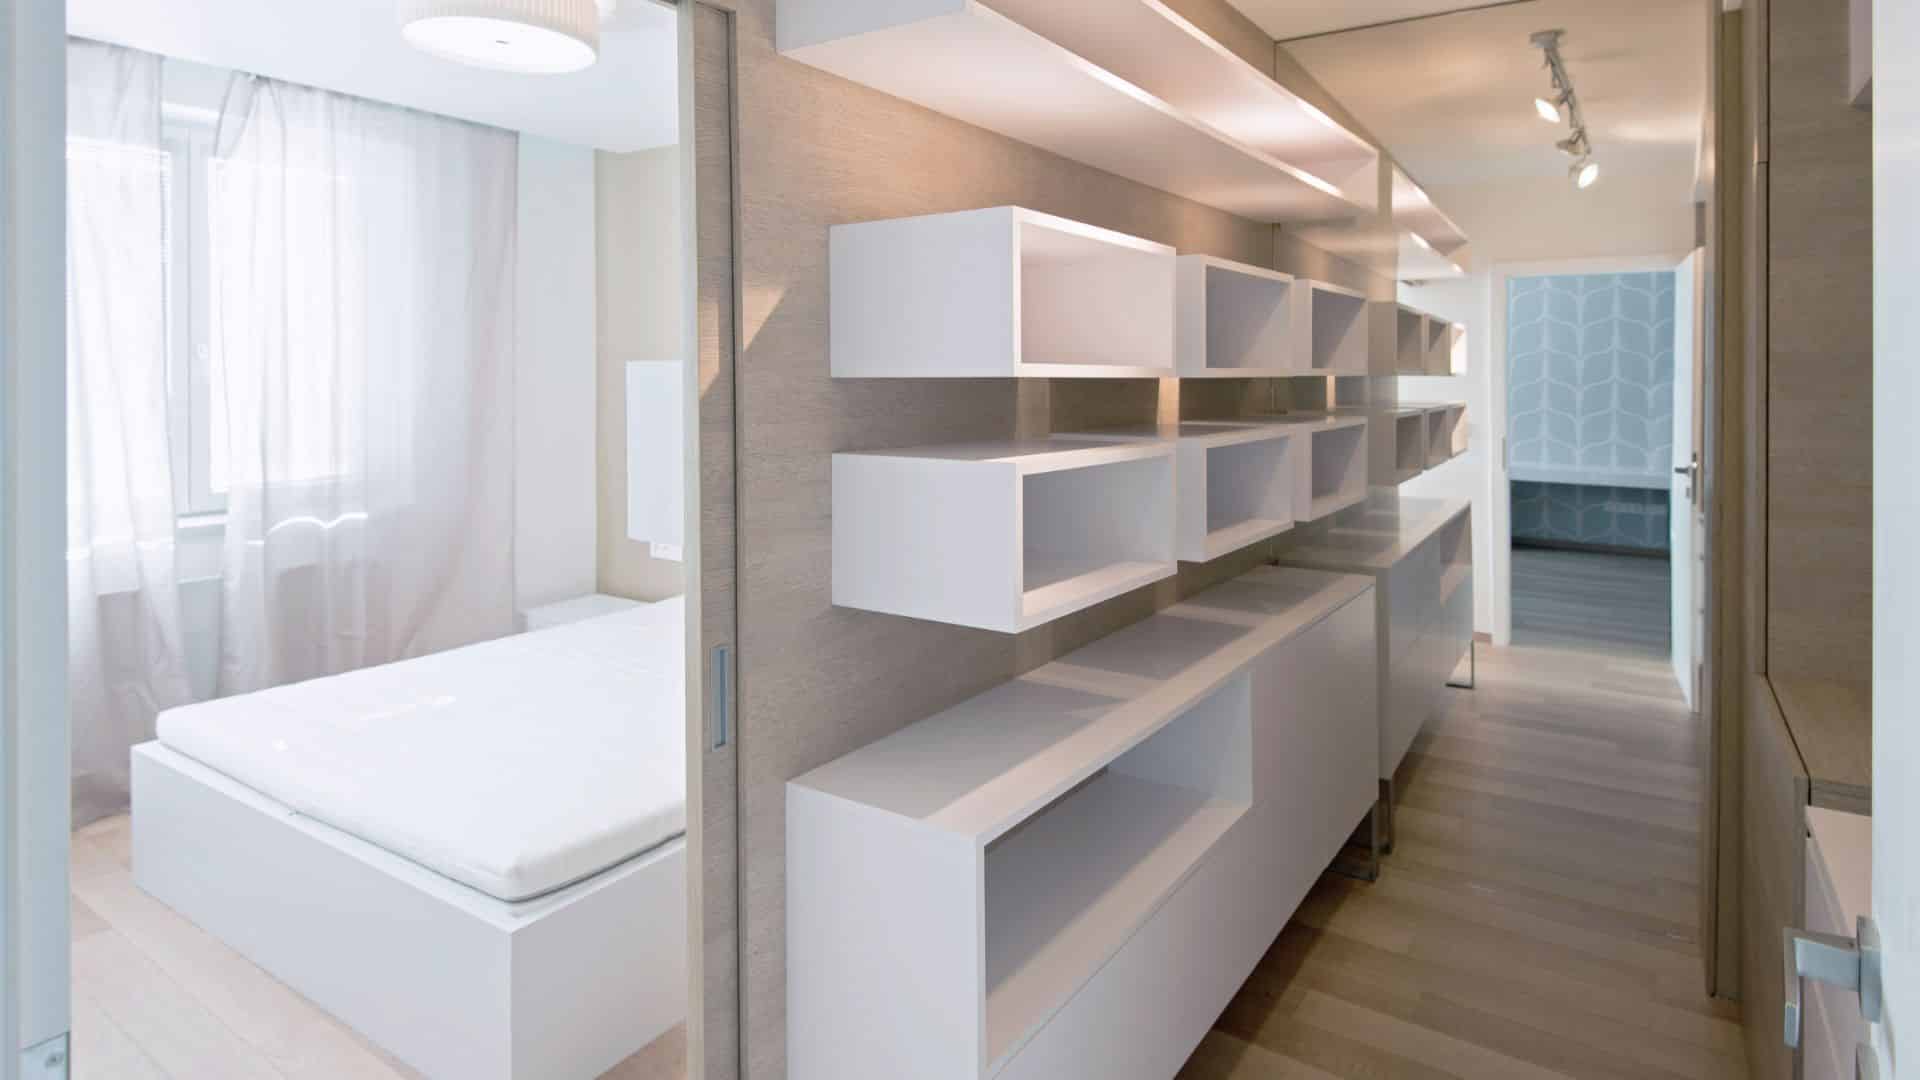 Elegant custom closet design in white color